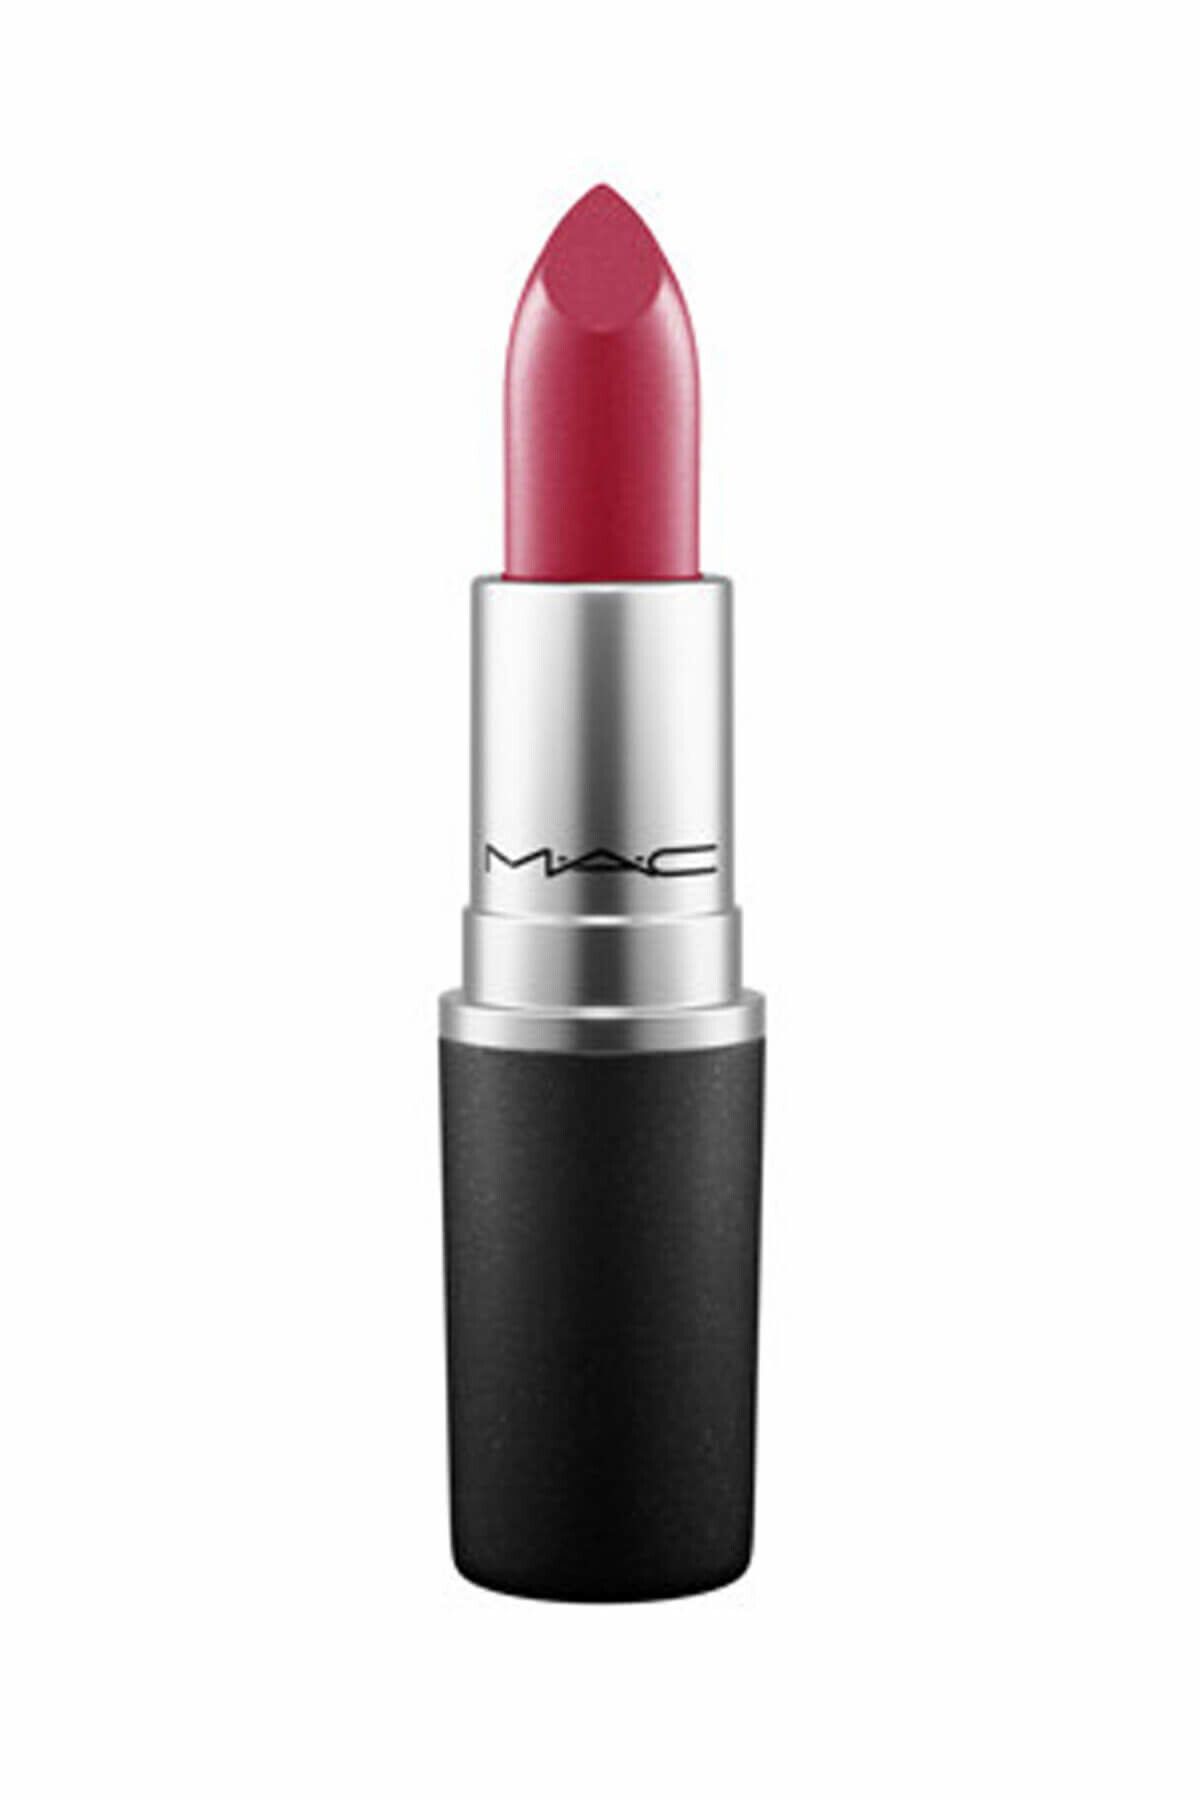 Mac Mac Lipstick D for Danger Lipstick 3 Gr shinee19